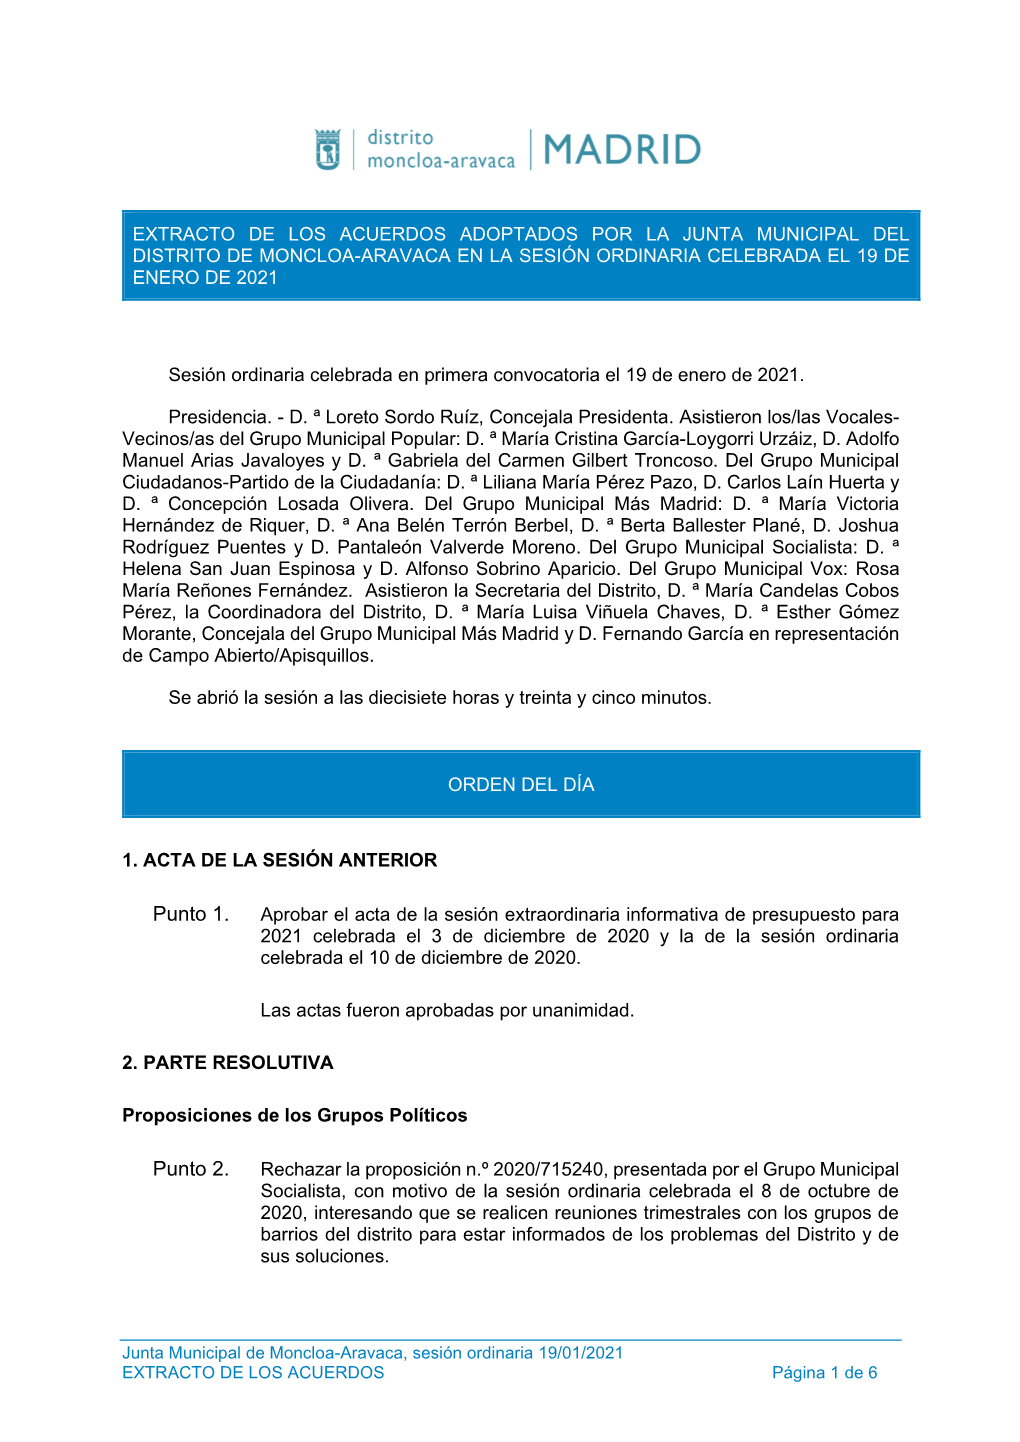 Extracto De Los Acuerdos Adoptados Por La Junta Municipal Del Distrito De Moncloa-Aravaca En La Sesión Ordinaria Celebrada El 19 De Enero De 2021